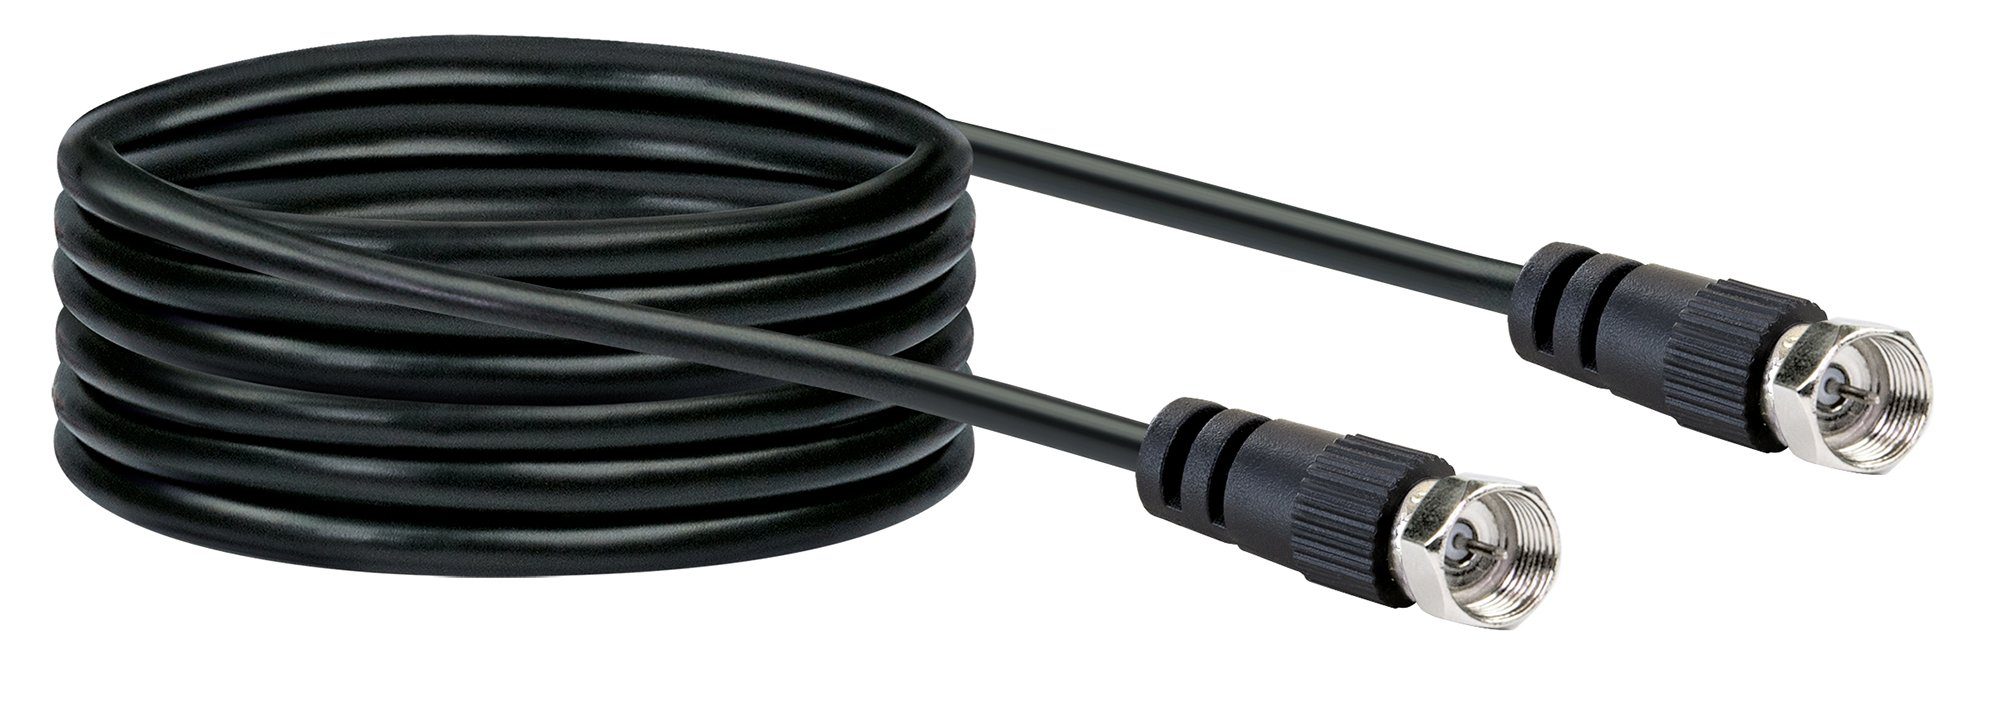 Schwaiger KVC30 533 SAT-Kabel, F-Stecker, (300 cm), 2-fach geschirmt